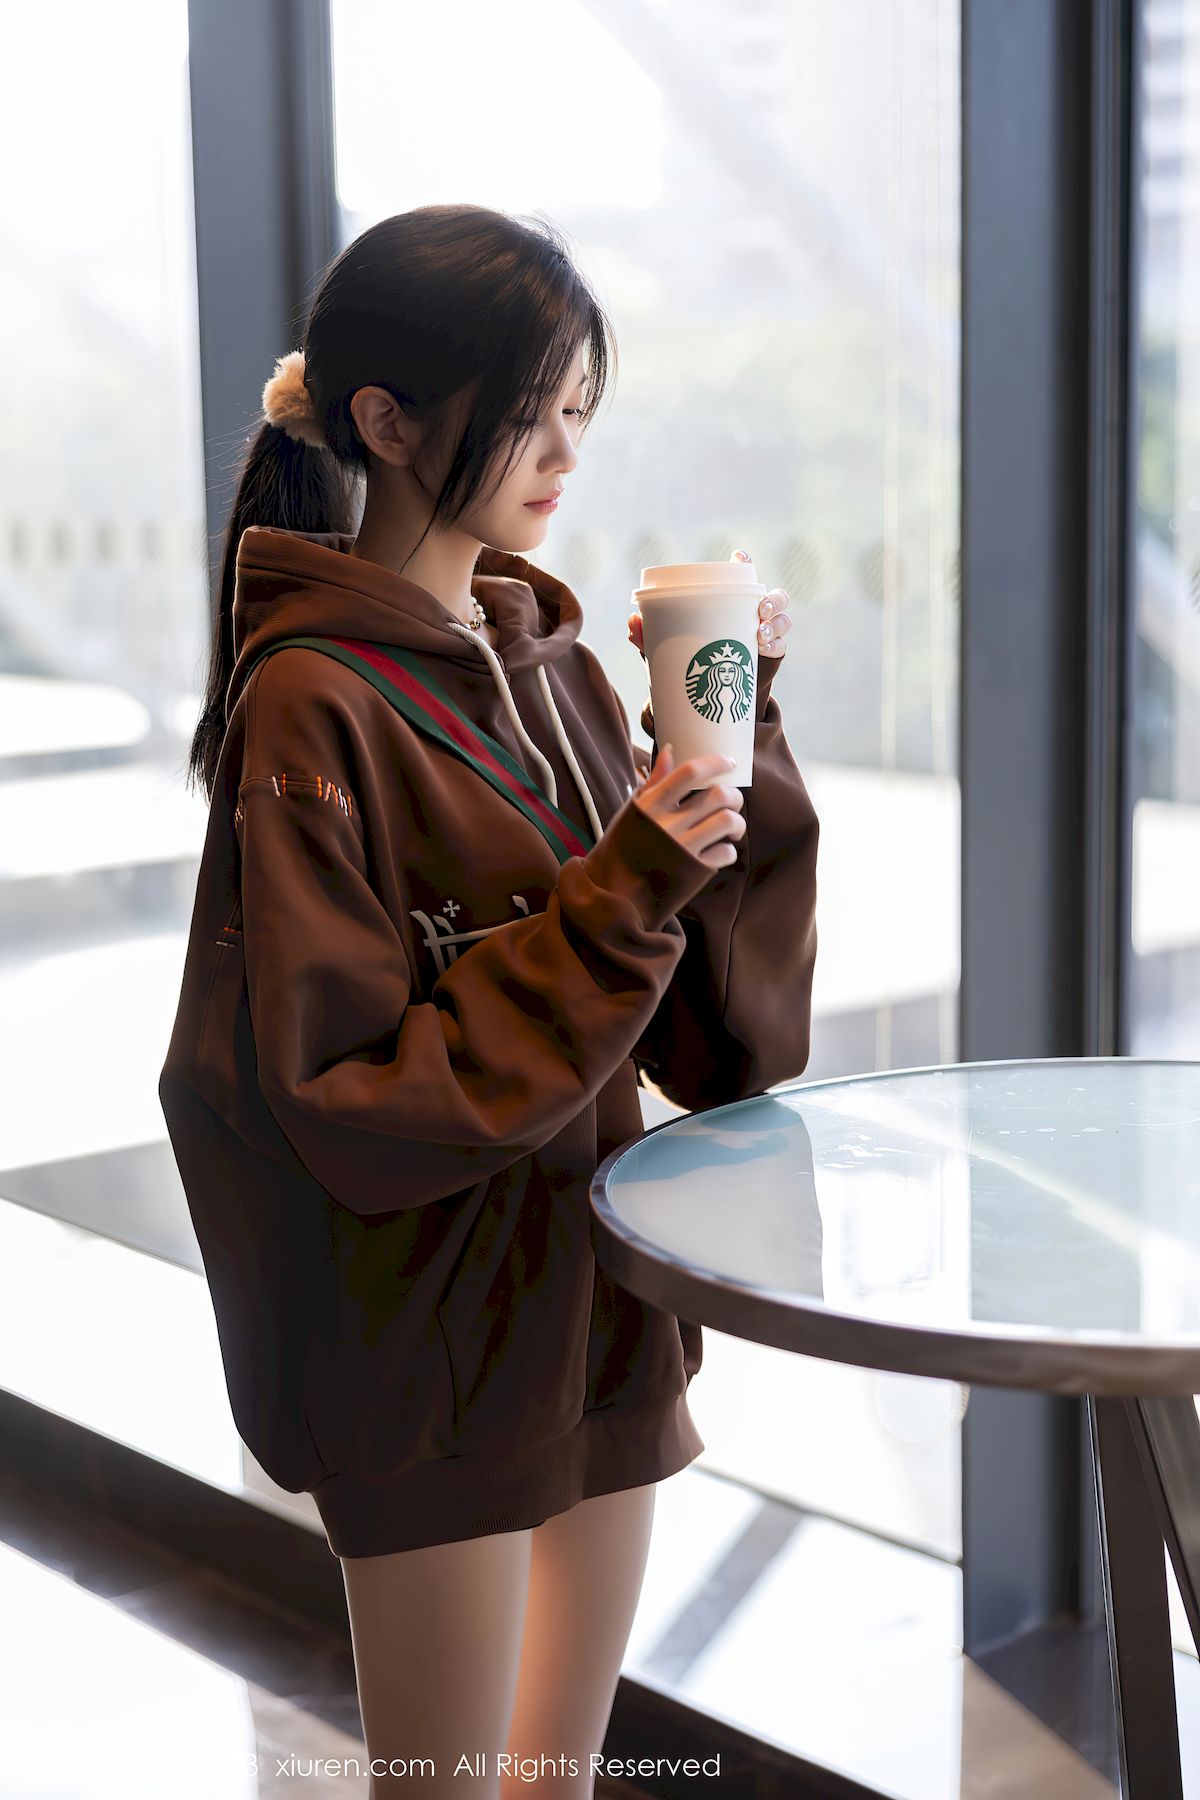 程程程-咖啡色卫衣搭配原色丝袜性感写真